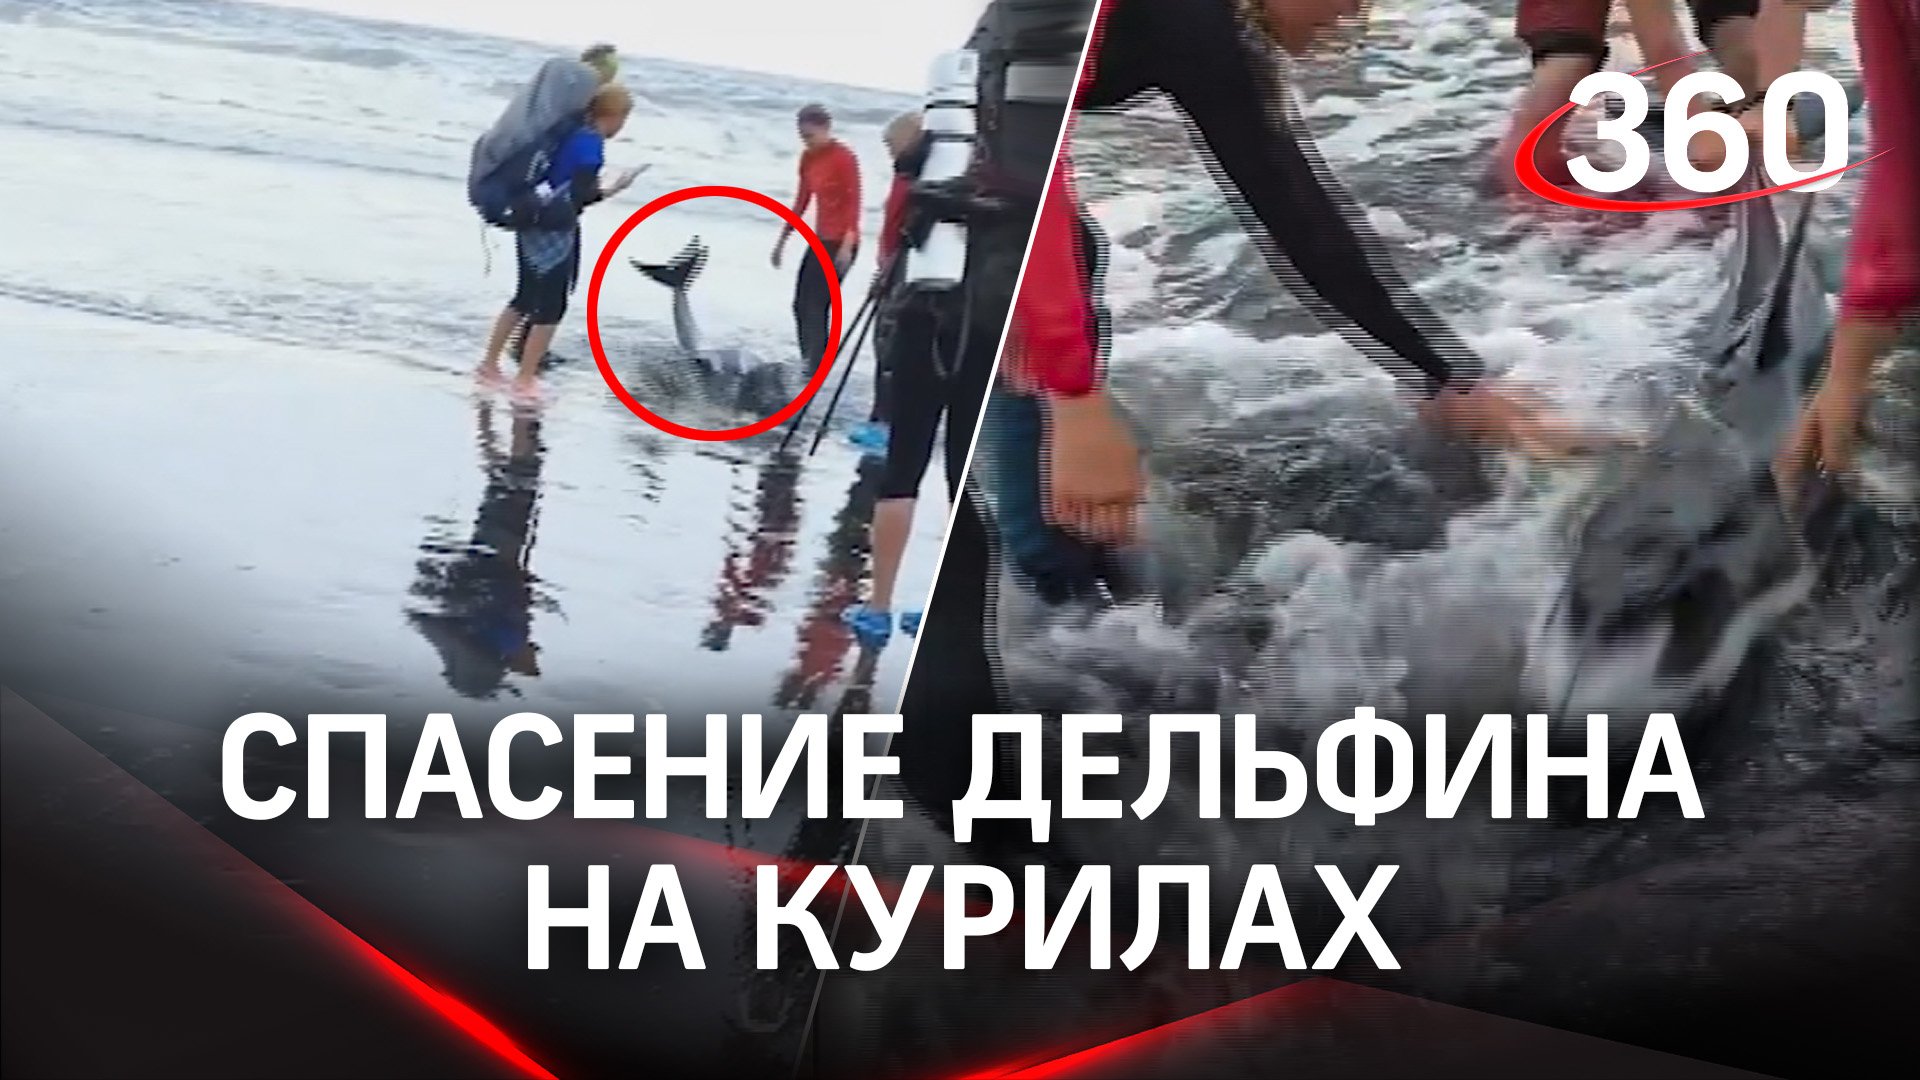 Застрявшего на мелководье дельфина спасли на Курилах - туристы оттащили его в океан